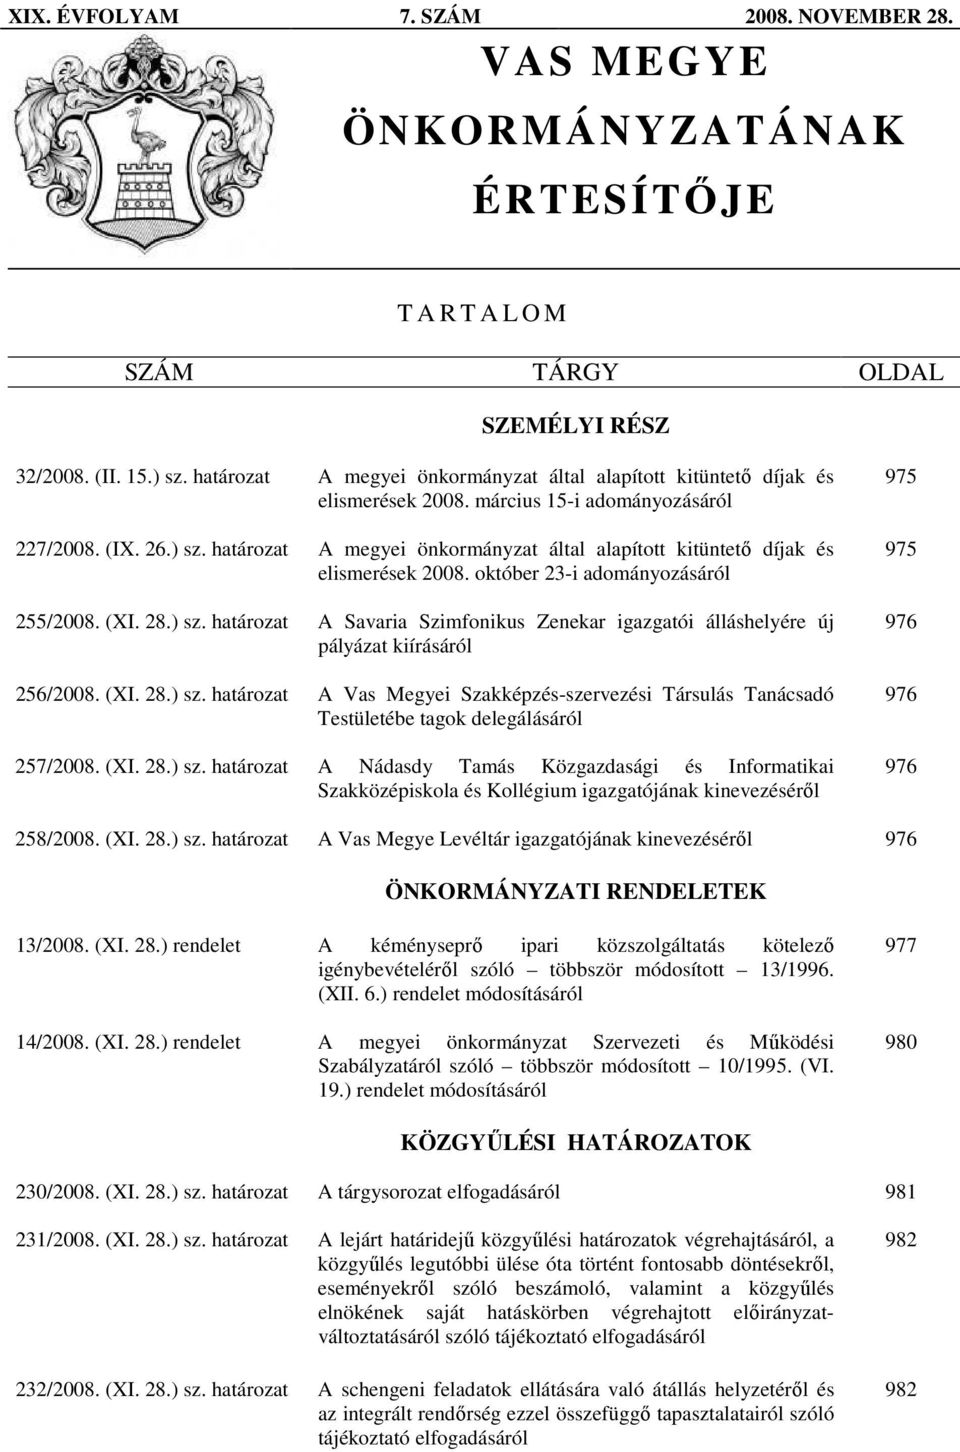 határozat A megyei önkormányzat által alapított kitüntetı díjak és elismerések 2008. október 23-i adományozásáról 255/2008. (XI. 28.) sz.